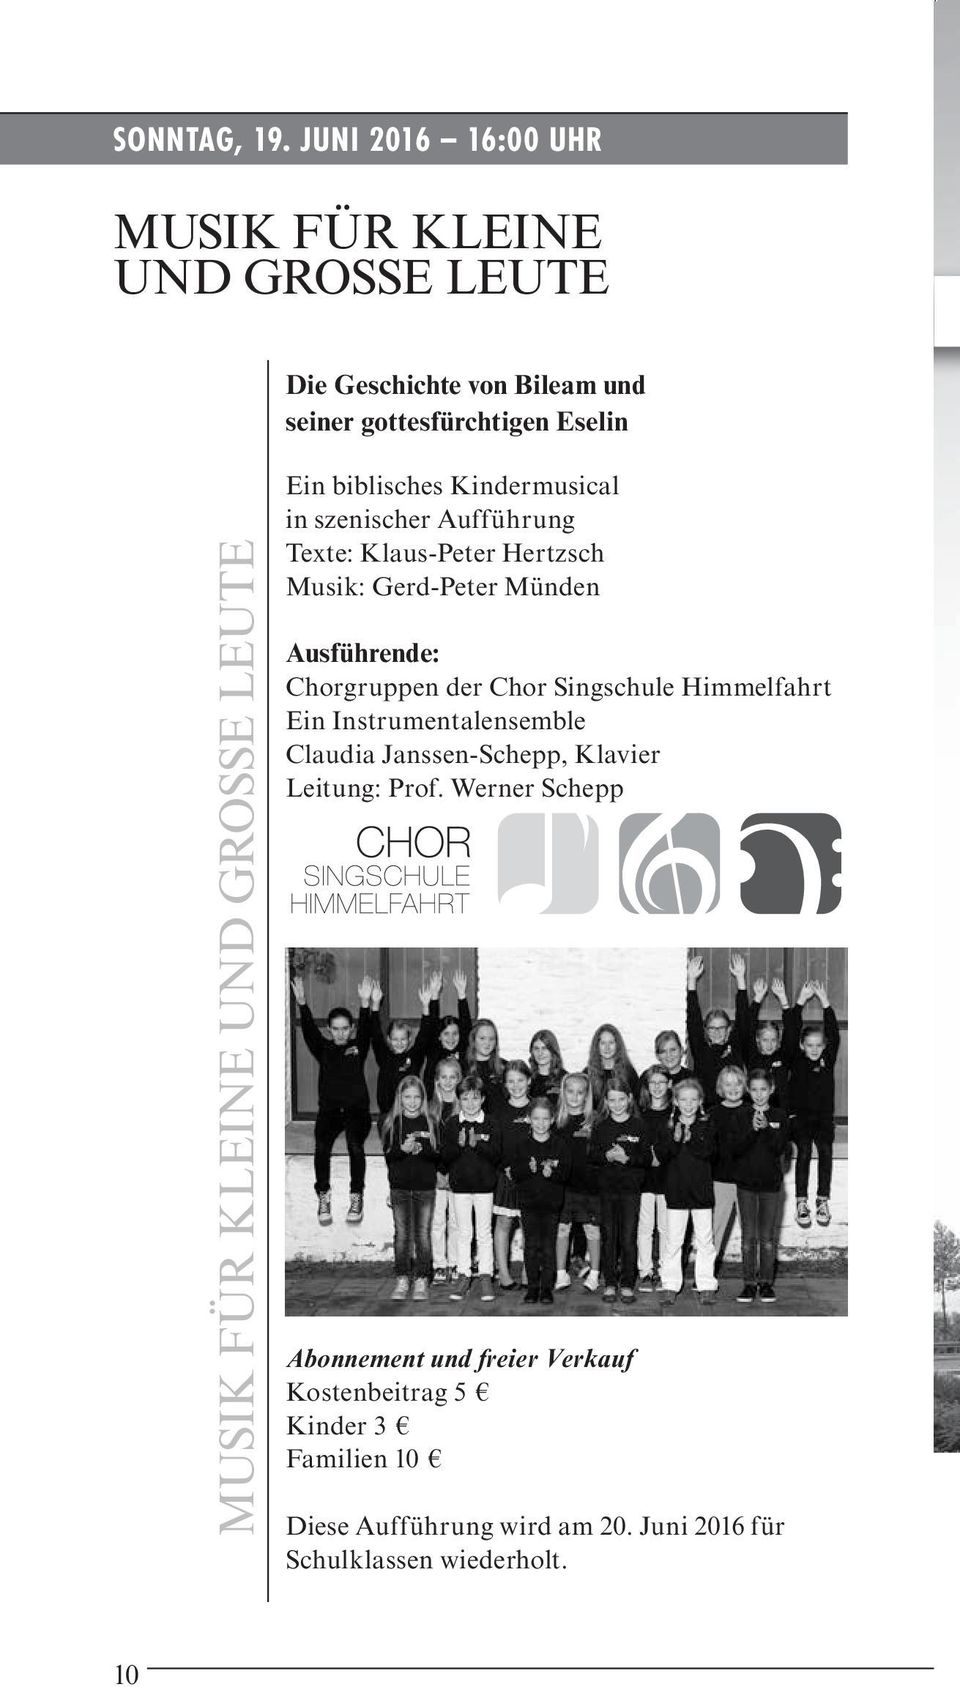 GROSSE LEUTE Ein biblisches Kindermusical in szenischer Aufführung Texte: Klaus-Peter Hertzsch Musik: Gerd-Peter Münden Ausführende: